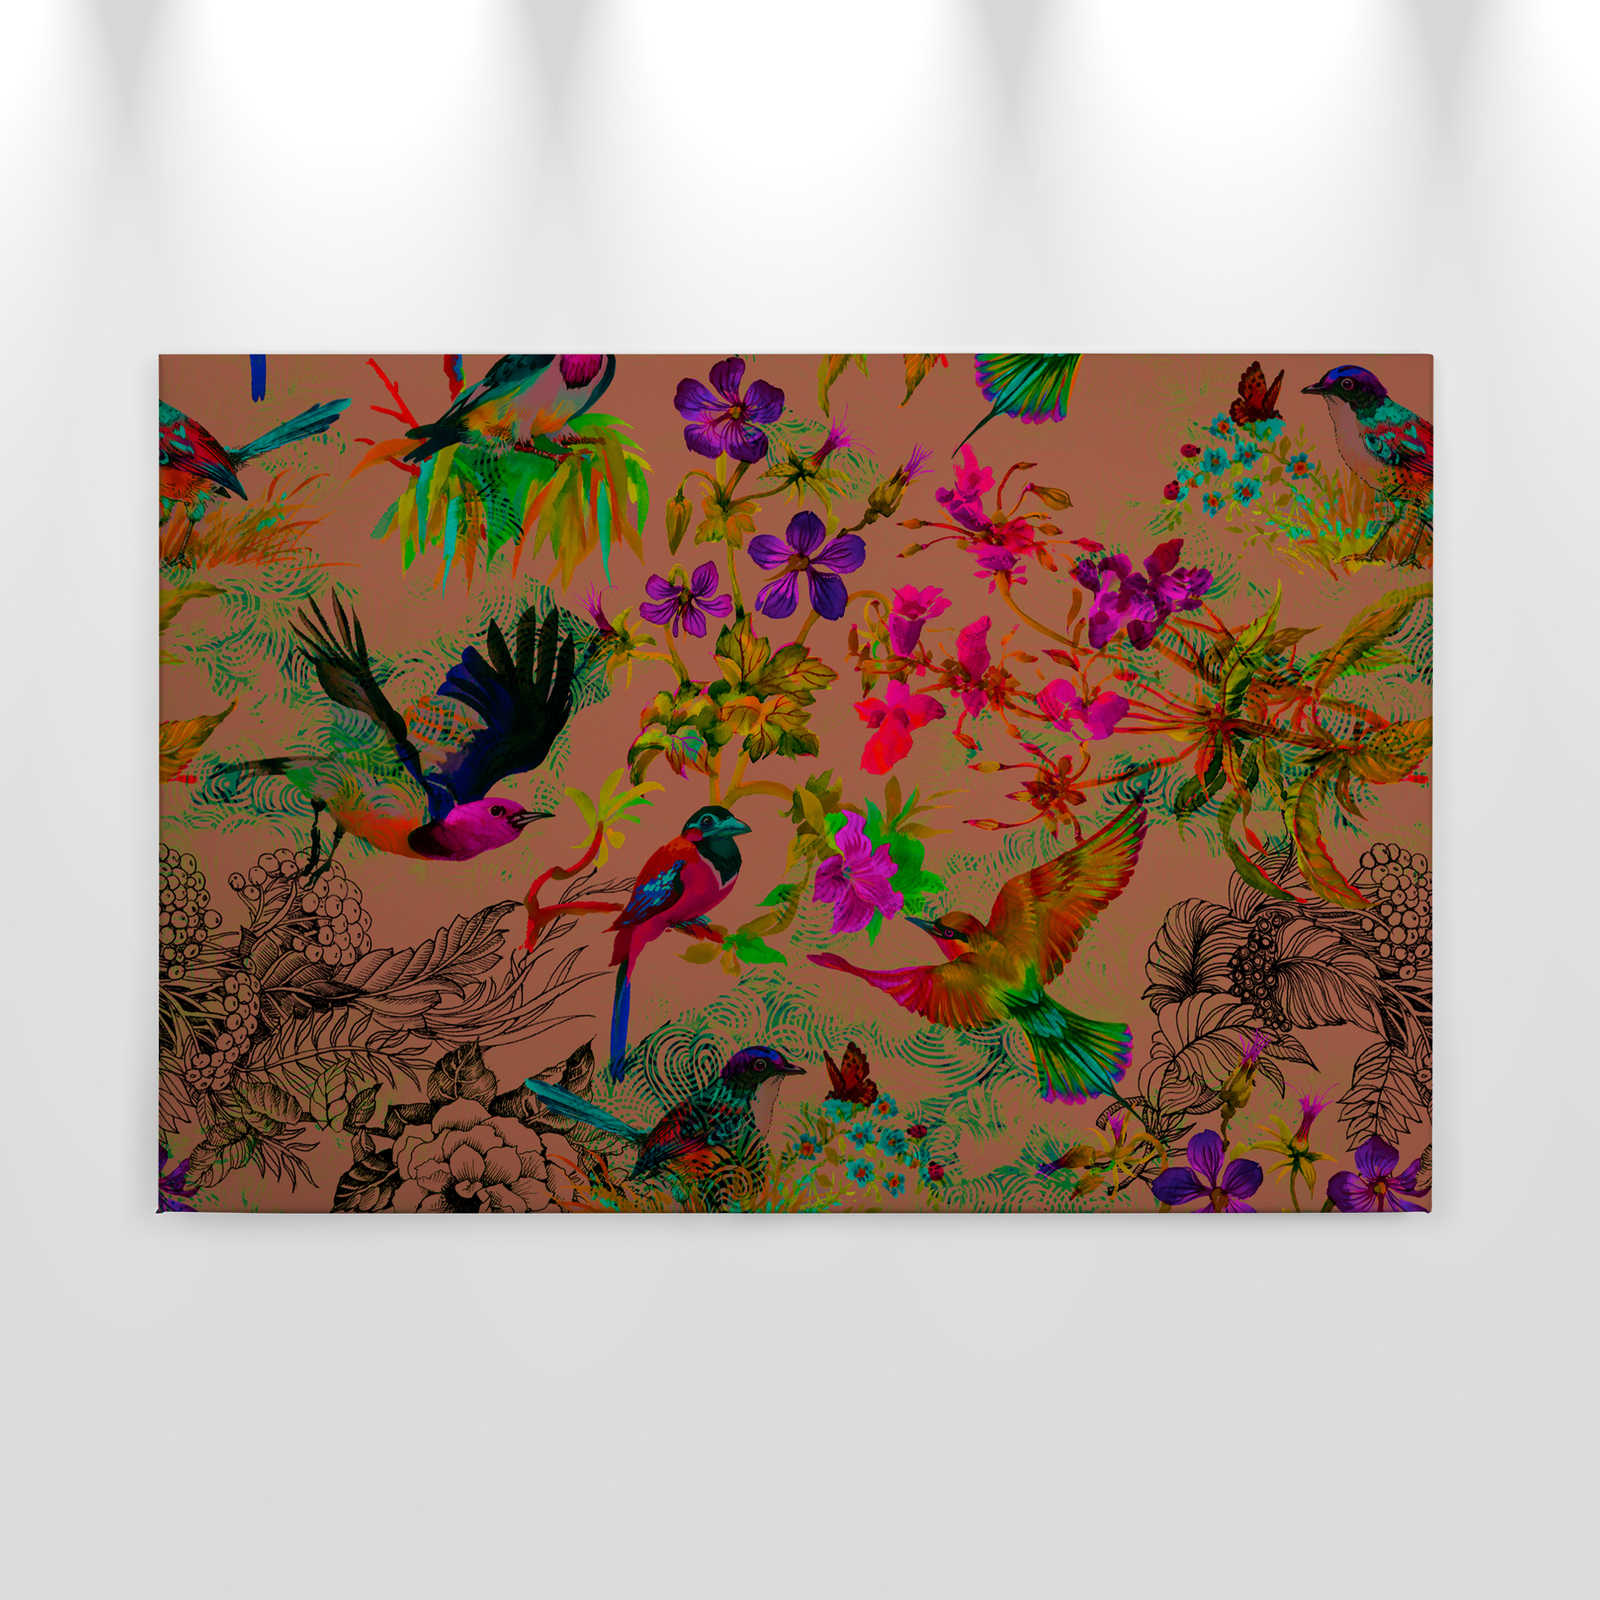             Canvas Schilderij van vogels in kleurrijke collagestijl - 0,90 m x 0,60 m
        